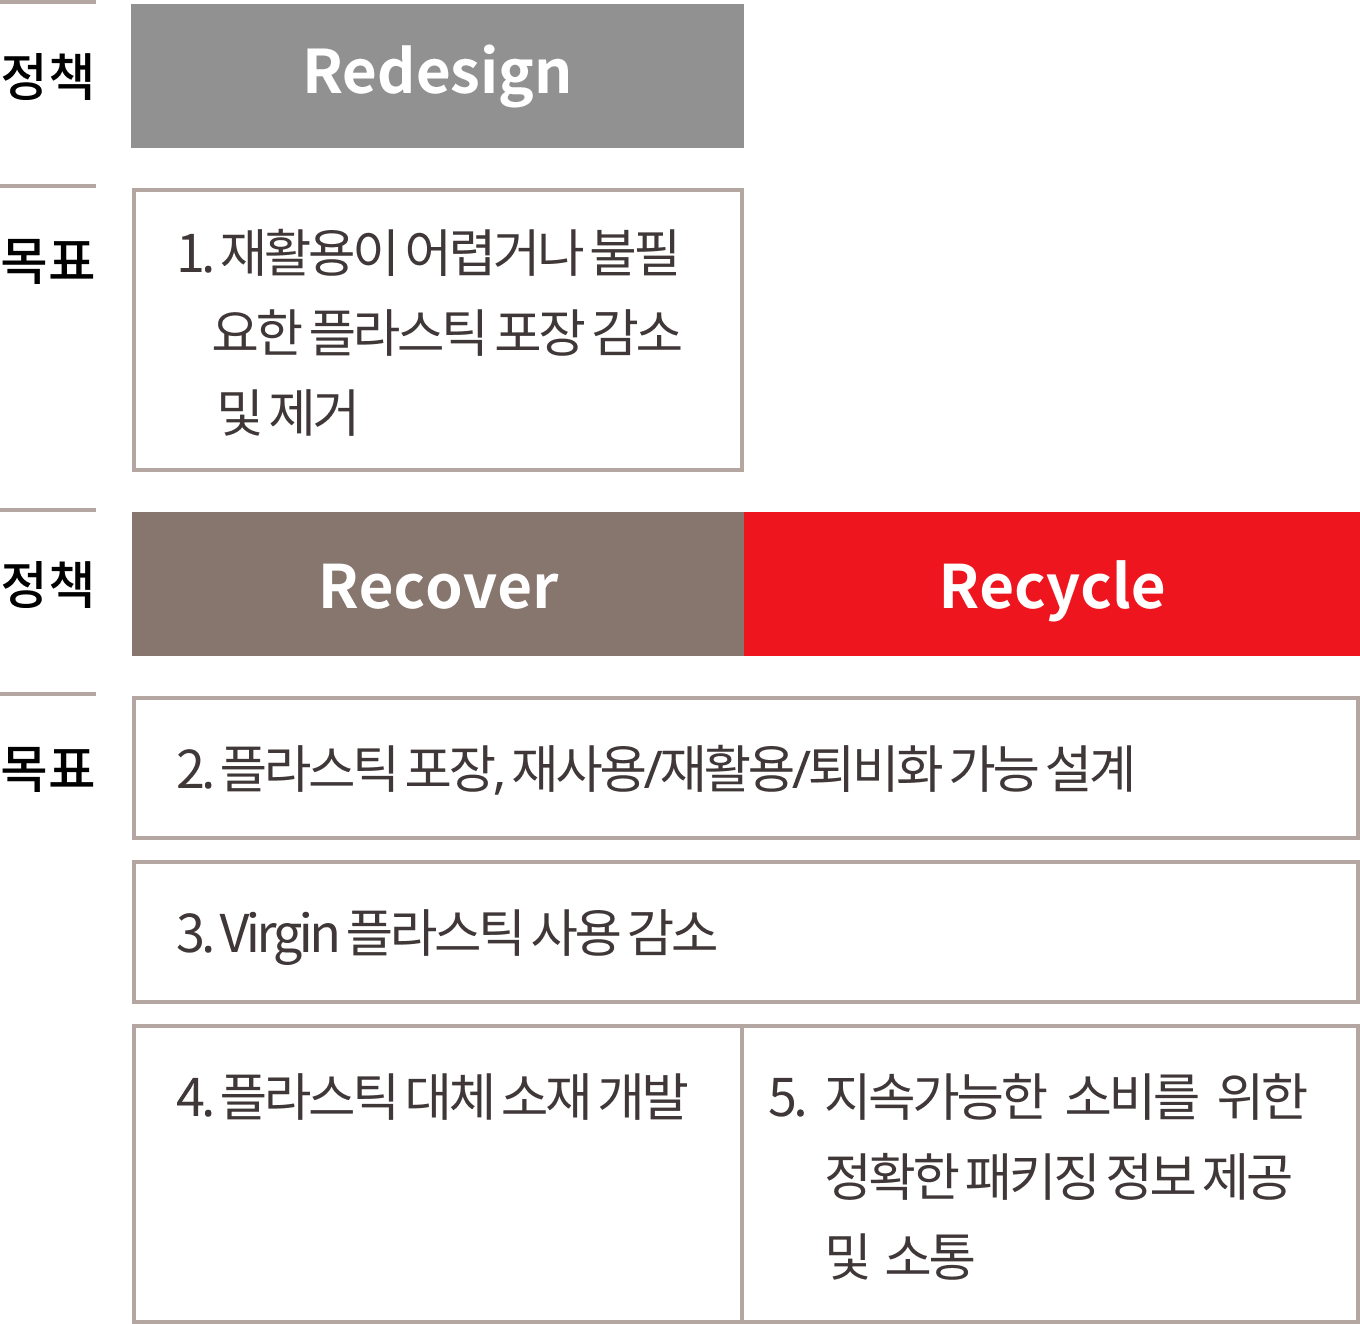 플라스틱 사용량 감소를 위한 패키징 목표 - 정책 : Redesign, recover, recycle, 목표 : 1. 재활용이 어렵거나 불필요한 플라스틱 포장 감소 및 제거, 2. 플라스틱 포장 , 재사용/재활용/퇴비화 가능 설계, 3. Virgin 플라스틱 사용 감소, 4. 플라스틱 대체 소재 개발, 5. 지속가능한 소비를 위한 정확한 패키징 정보 제공 및 소통